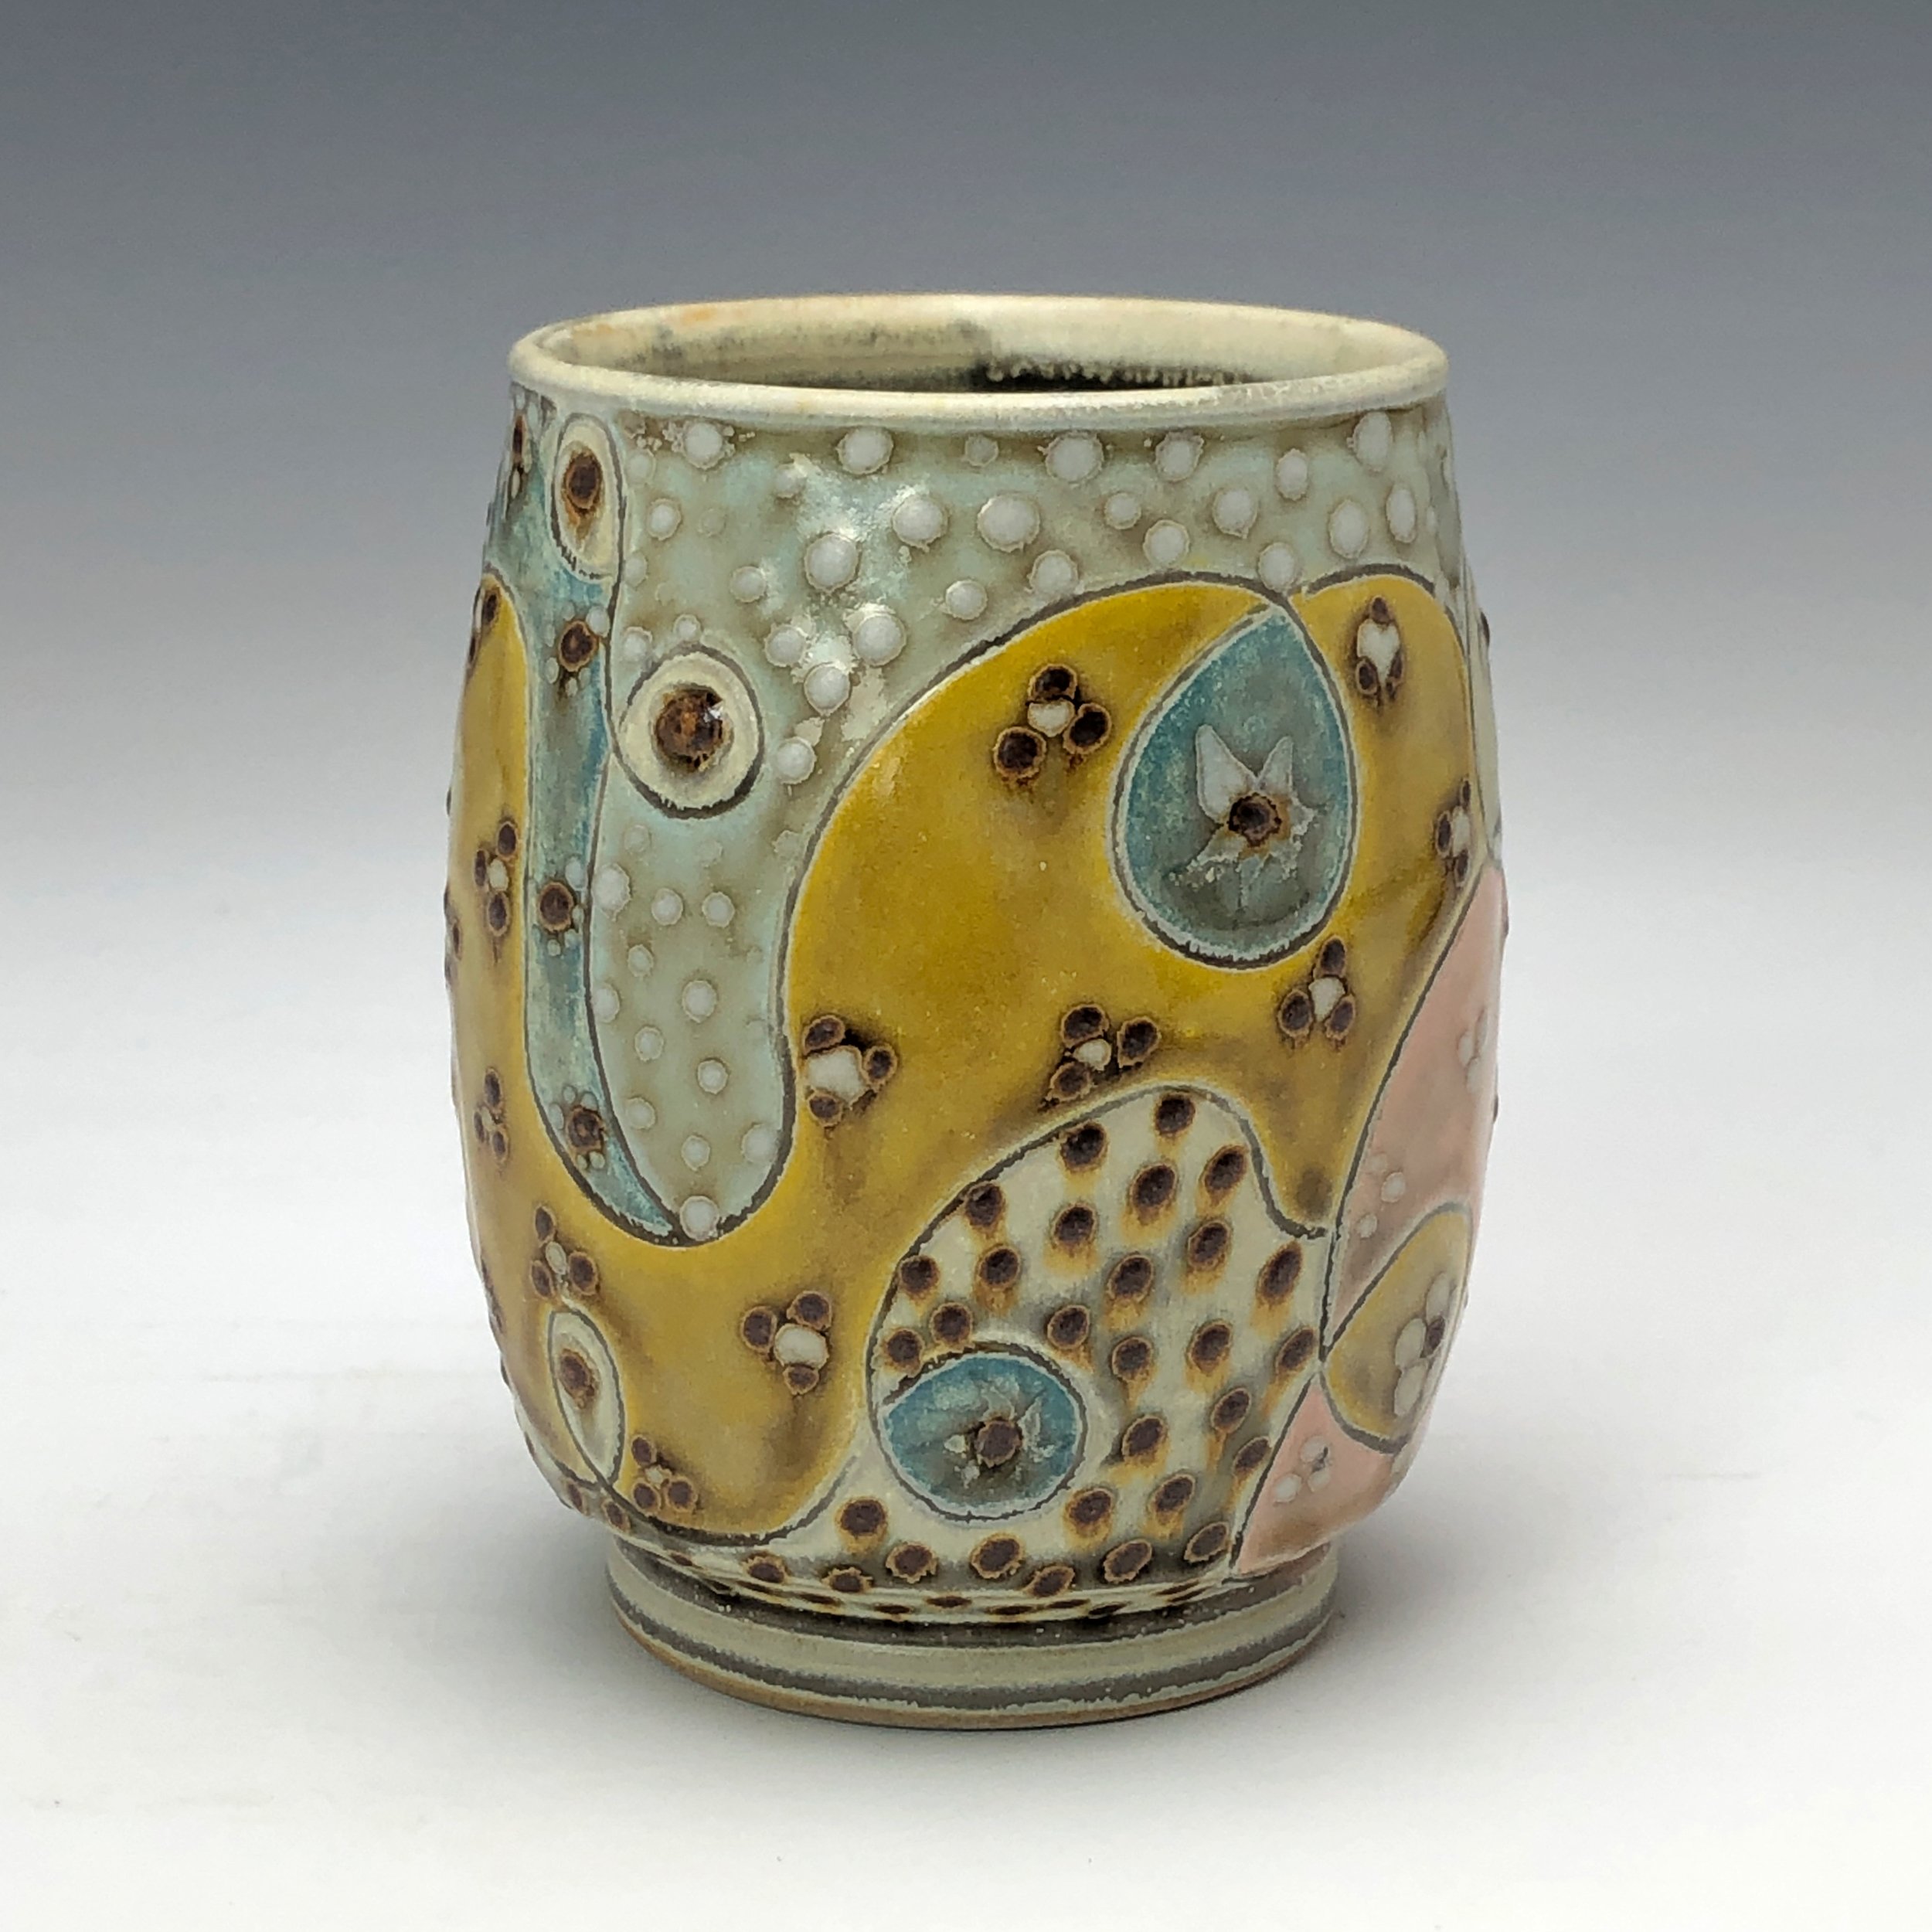 Artist Spotlight Blog — GR Pottery Forms